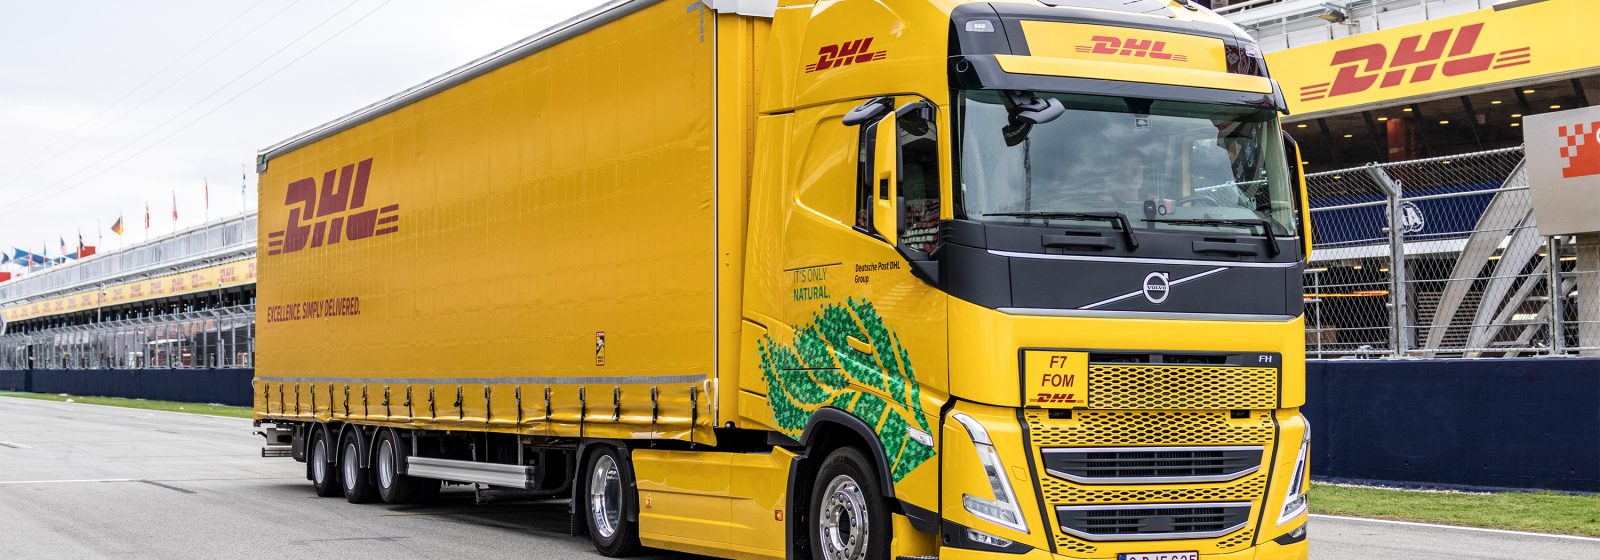 Een van de 37 trucks op biobrandstof die het logistieke circus van de Formule 1 races in Europa vervoert.